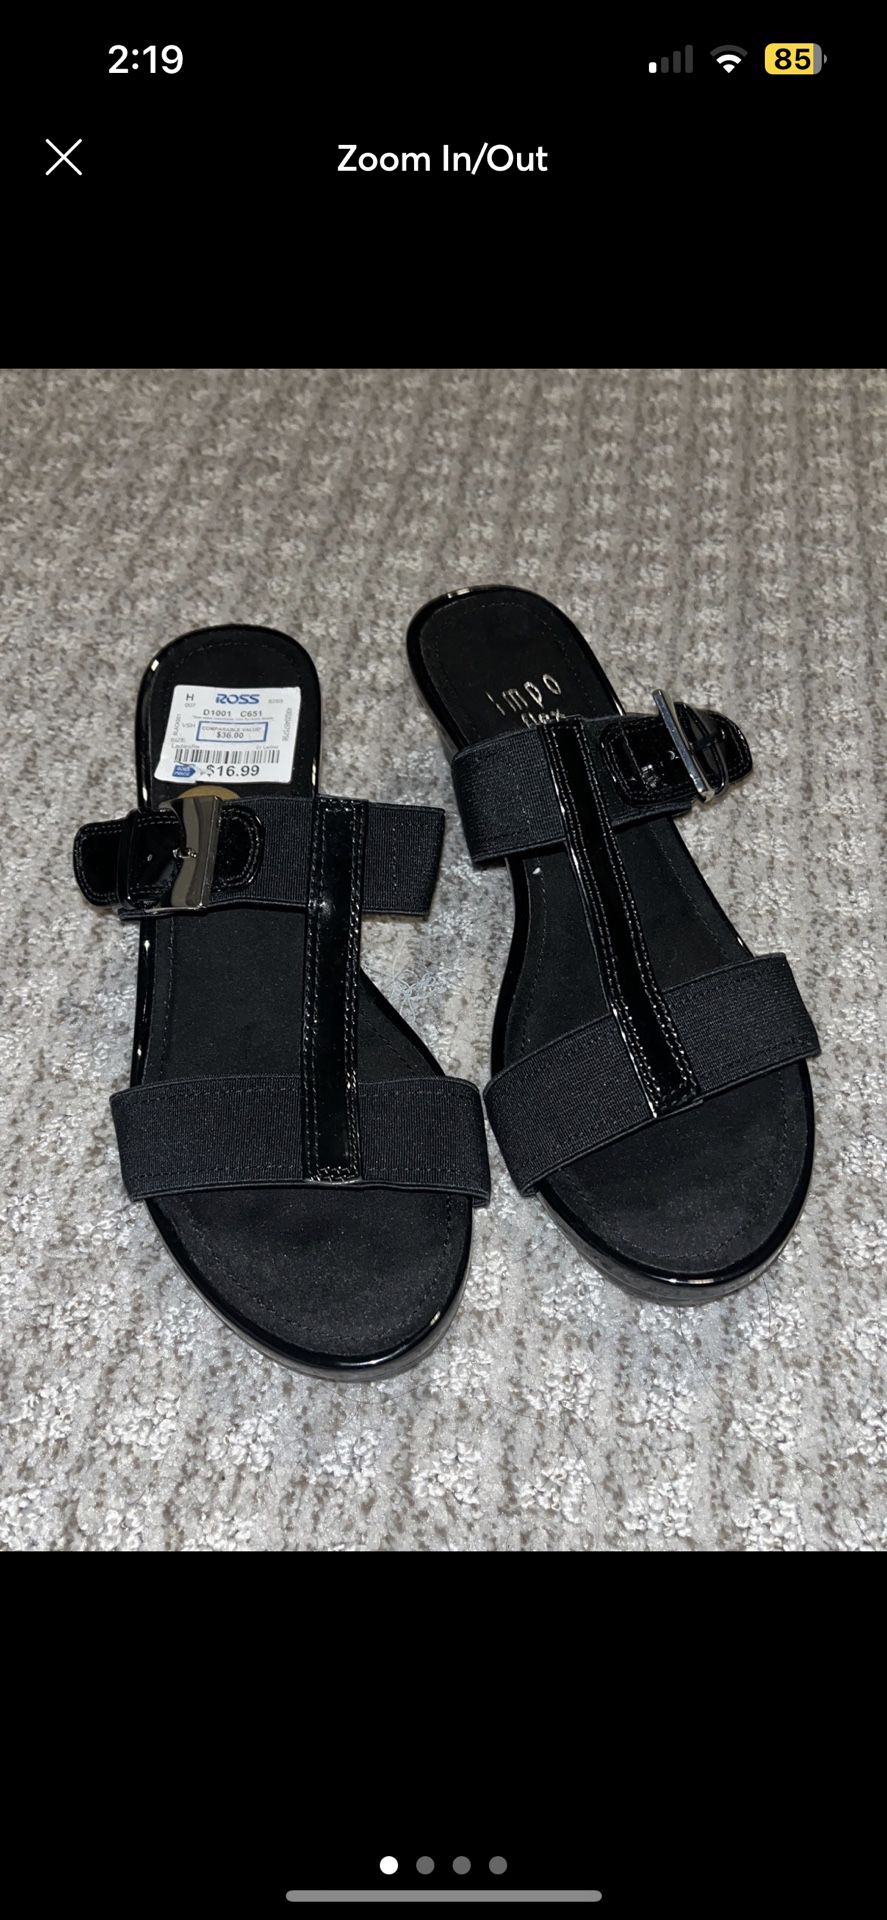 Impo Flex Black Sandal Footwear Women Size 8 for Sale in Rancho ...